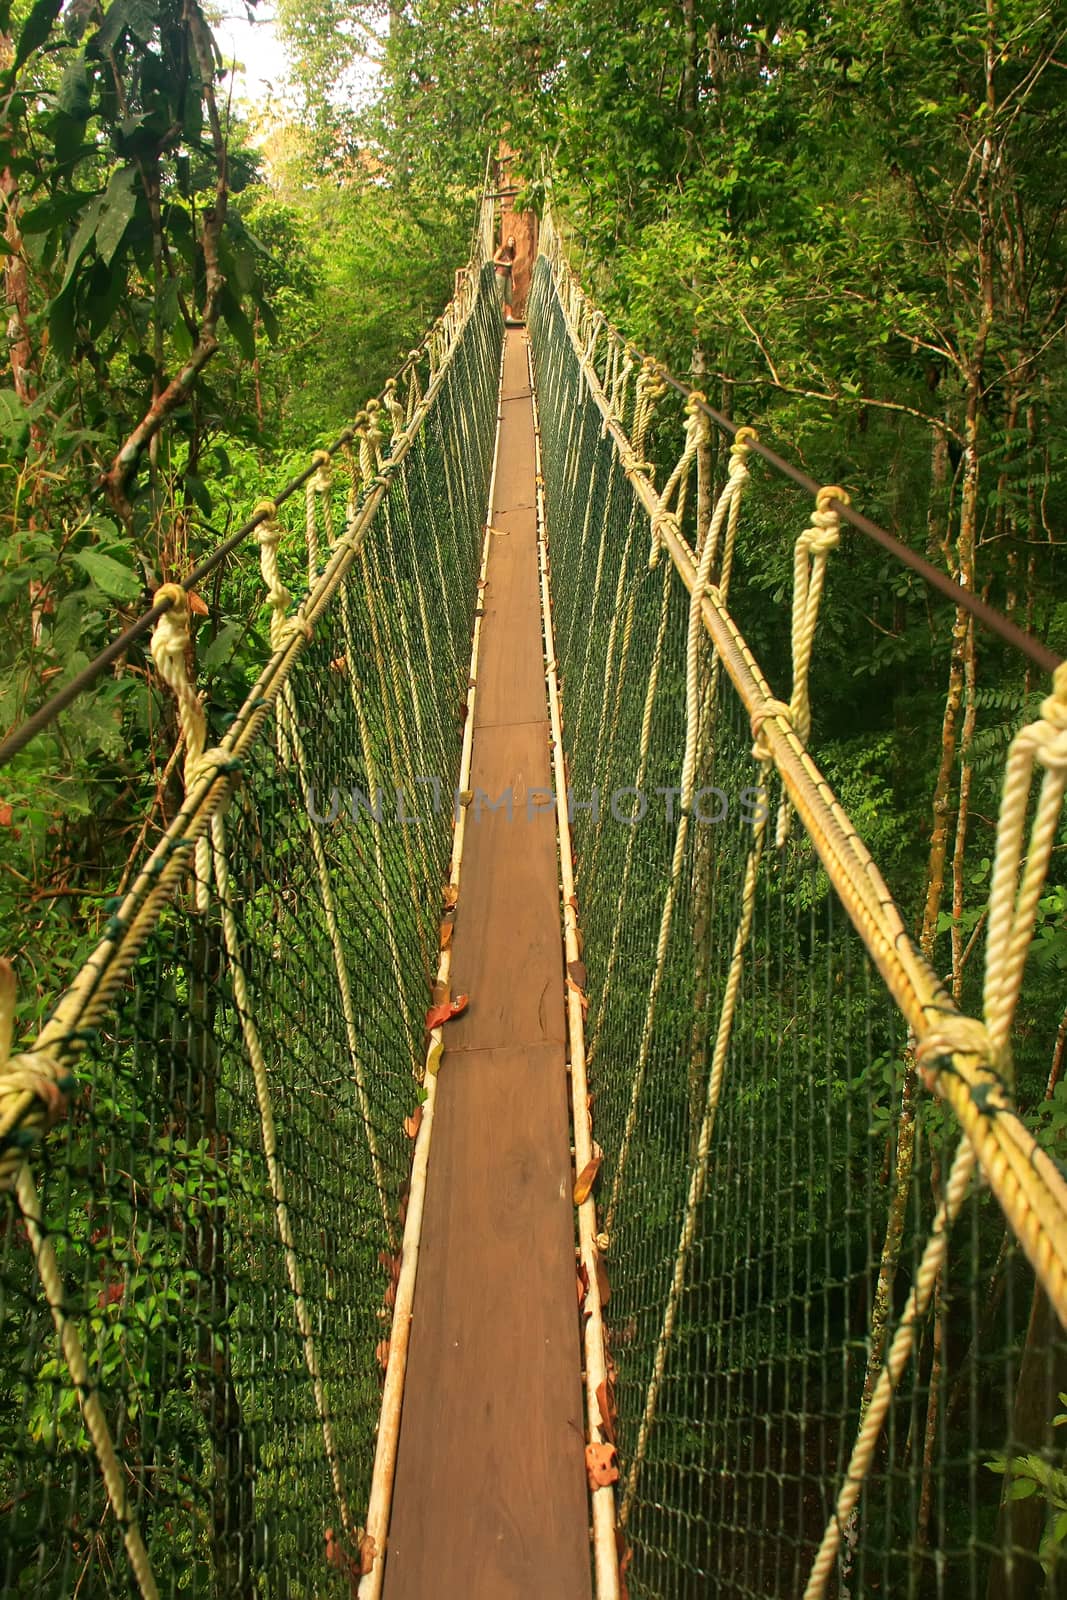 Canopy walkway, Taman Negara National Park, Malaysia by donya_nedomam